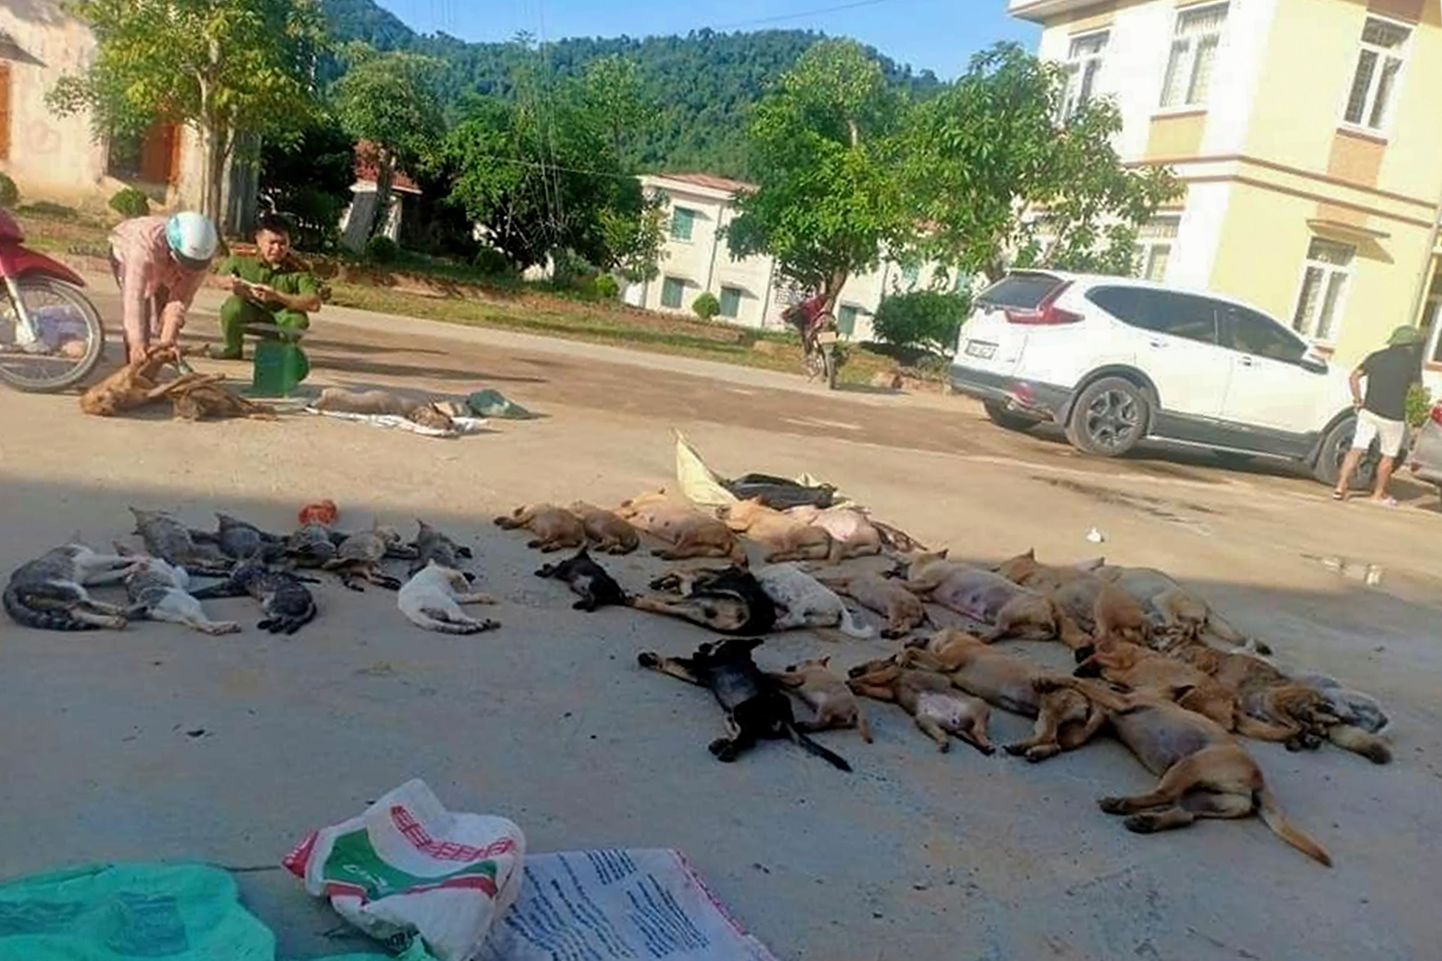 Mürgitatud koerade ja kasside jäänused Vietnamis Thanh Hoa provintsi linnatänaval. Politsei pidas kinni korjuseid kokku kogunud abielupaari.